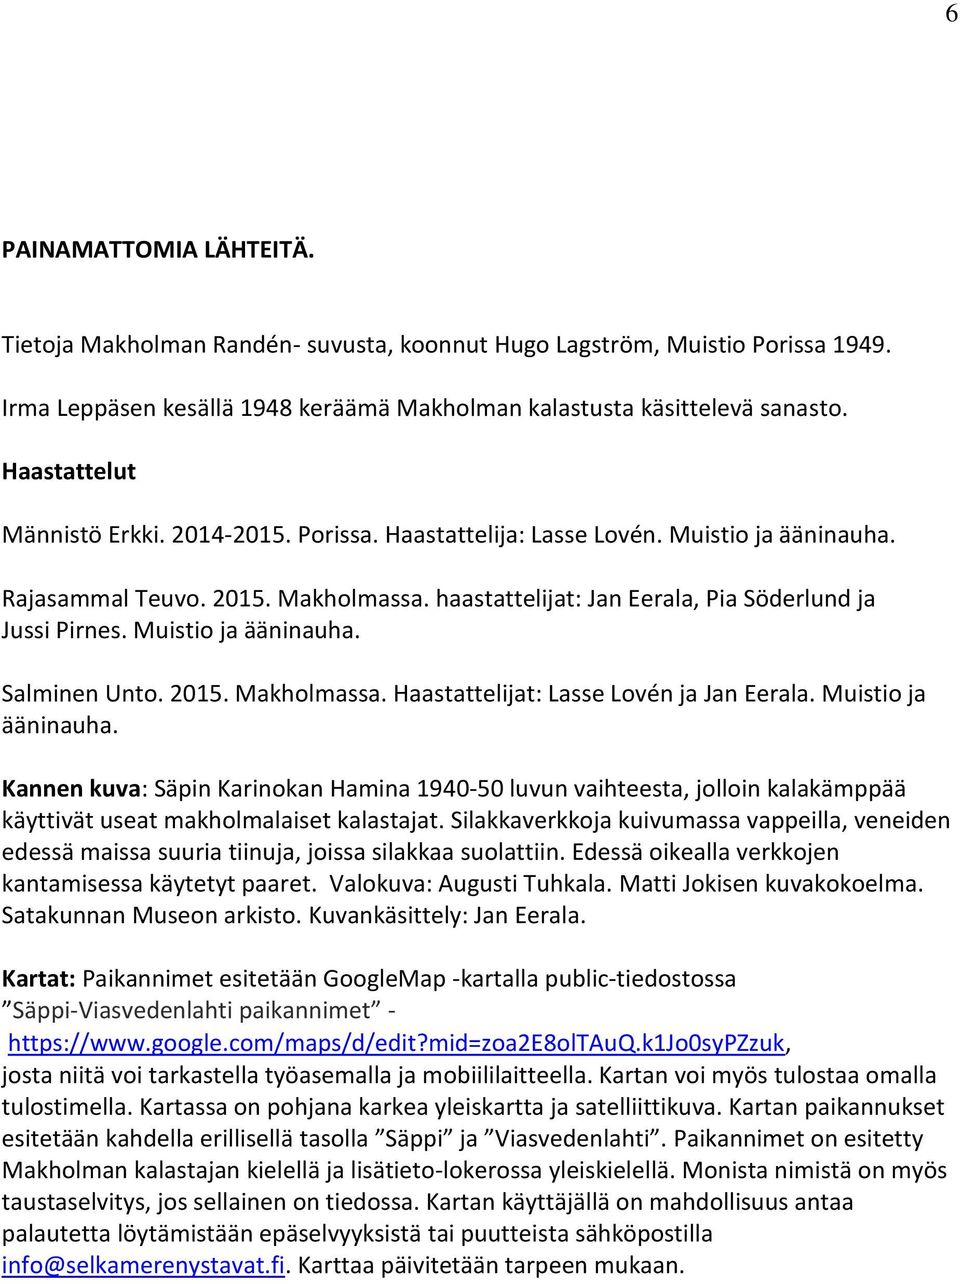 Muistio ja ääninauha. Salminen Unto. 2015. Makholmassa. Haastattelijat: Lasse Lovén ja Jan Eerala. Muistio ja ääninauha.